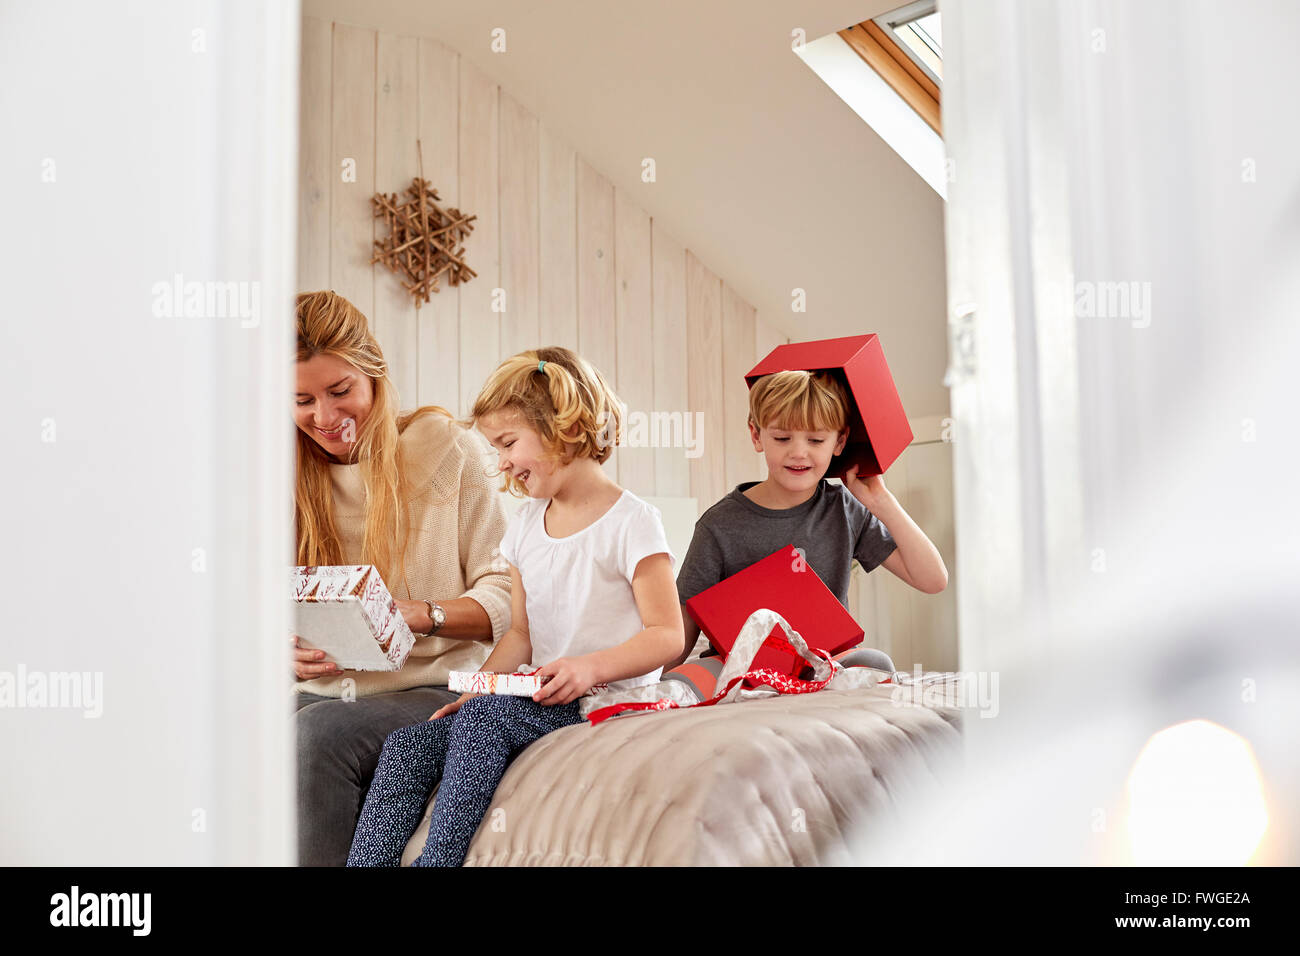 Weihnachtsmorgen in einem Einfamilienhaus. Eine Mutter und zwei Kinder sitzen auf einem Bett Eröffnung präsentiert. Stockfoto